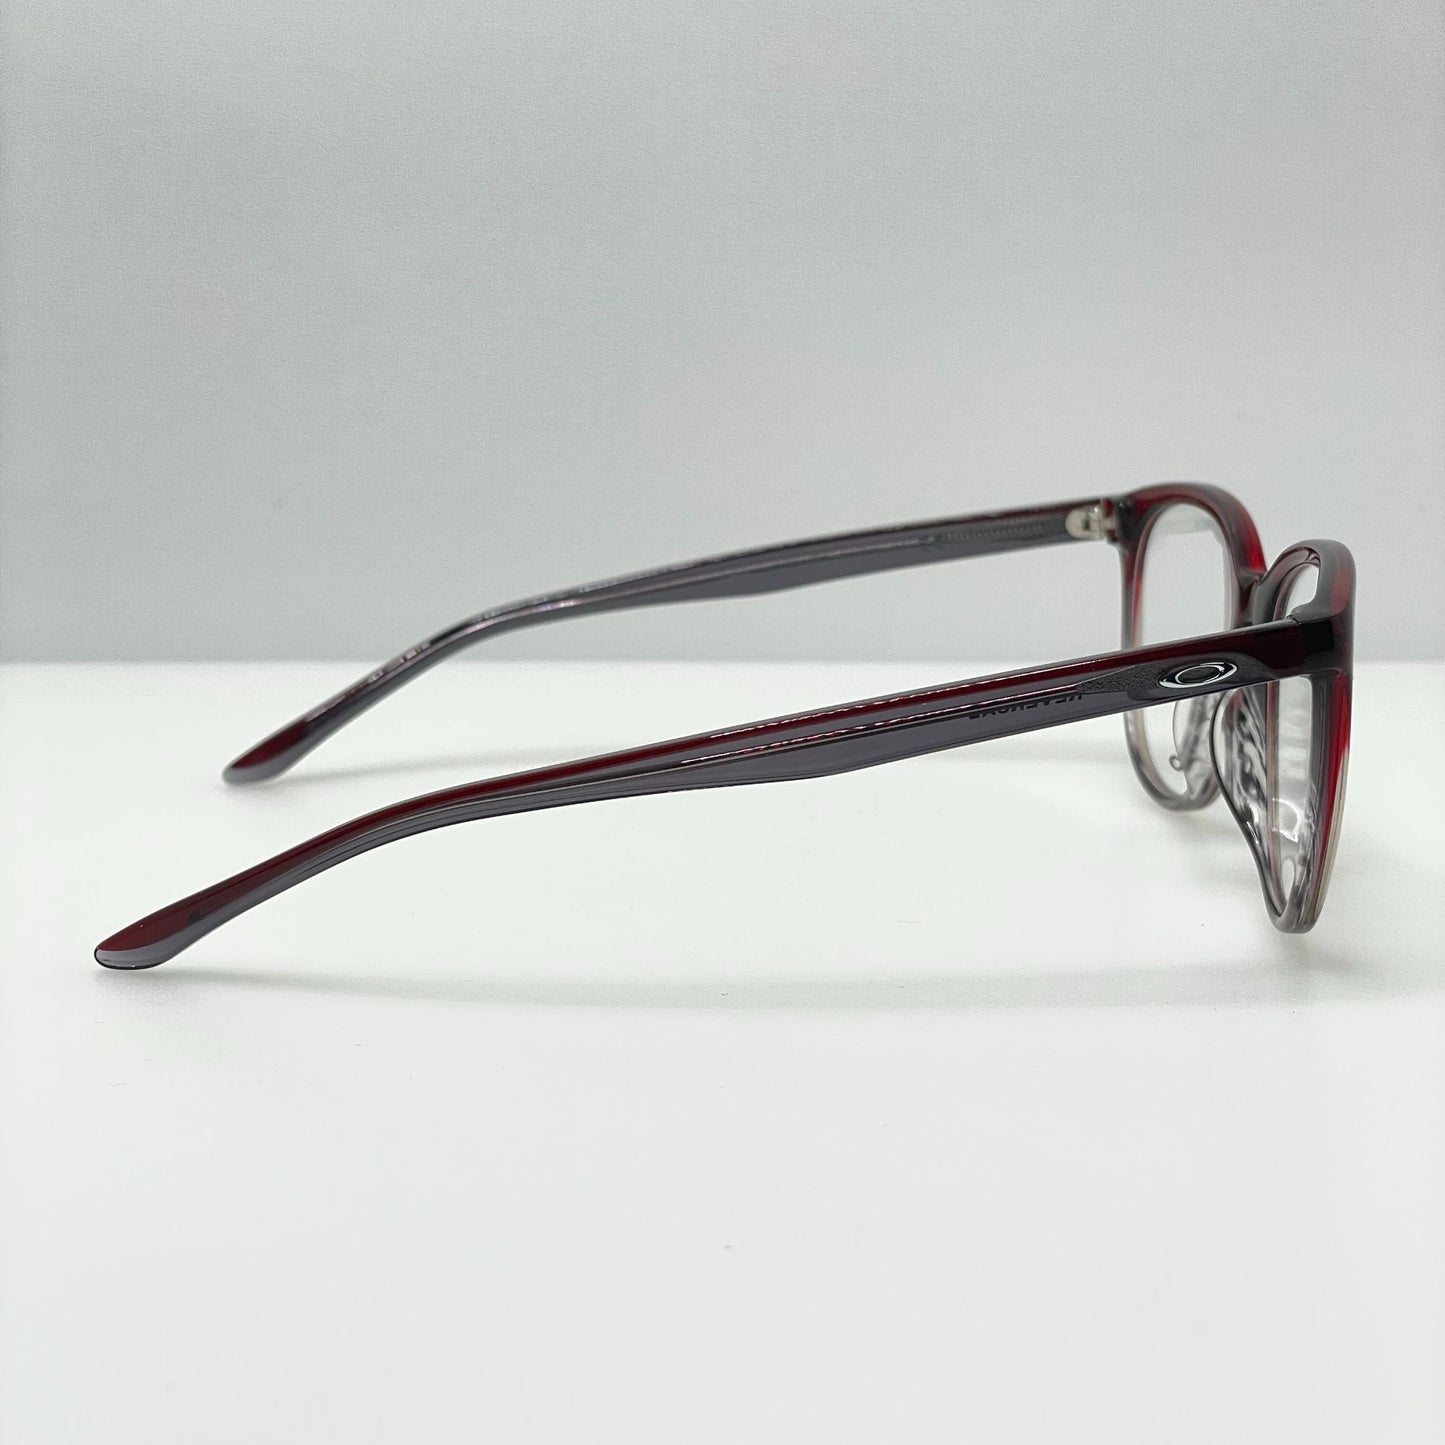 Oakley Eyeglasses Eye Glasses Frames OX1135-0452 52-17-137 Reversal Red Fade